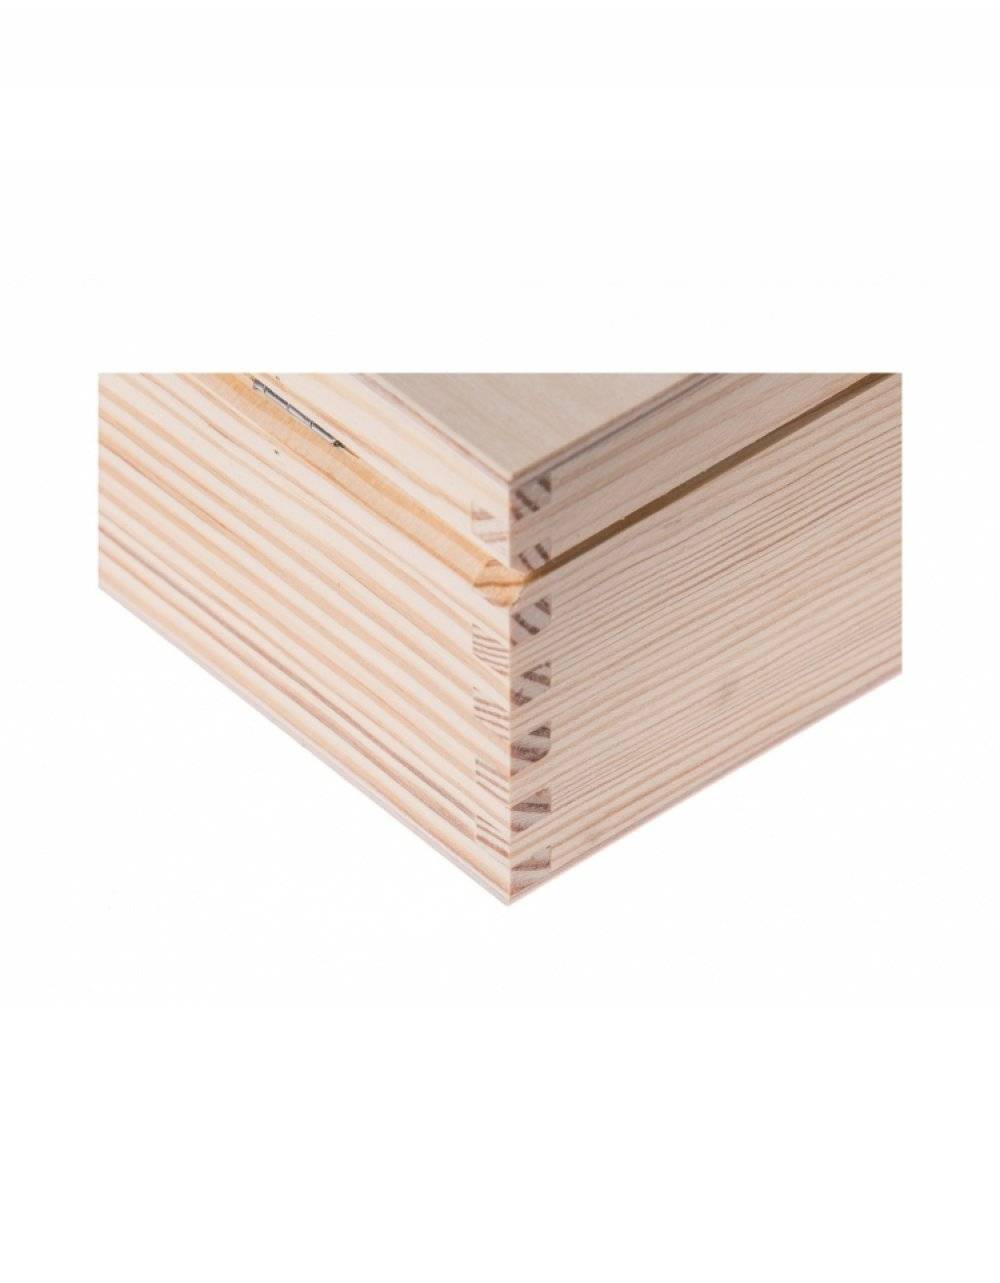 Přírodní dřevěná dárková krabička 11x11x10,5 cm